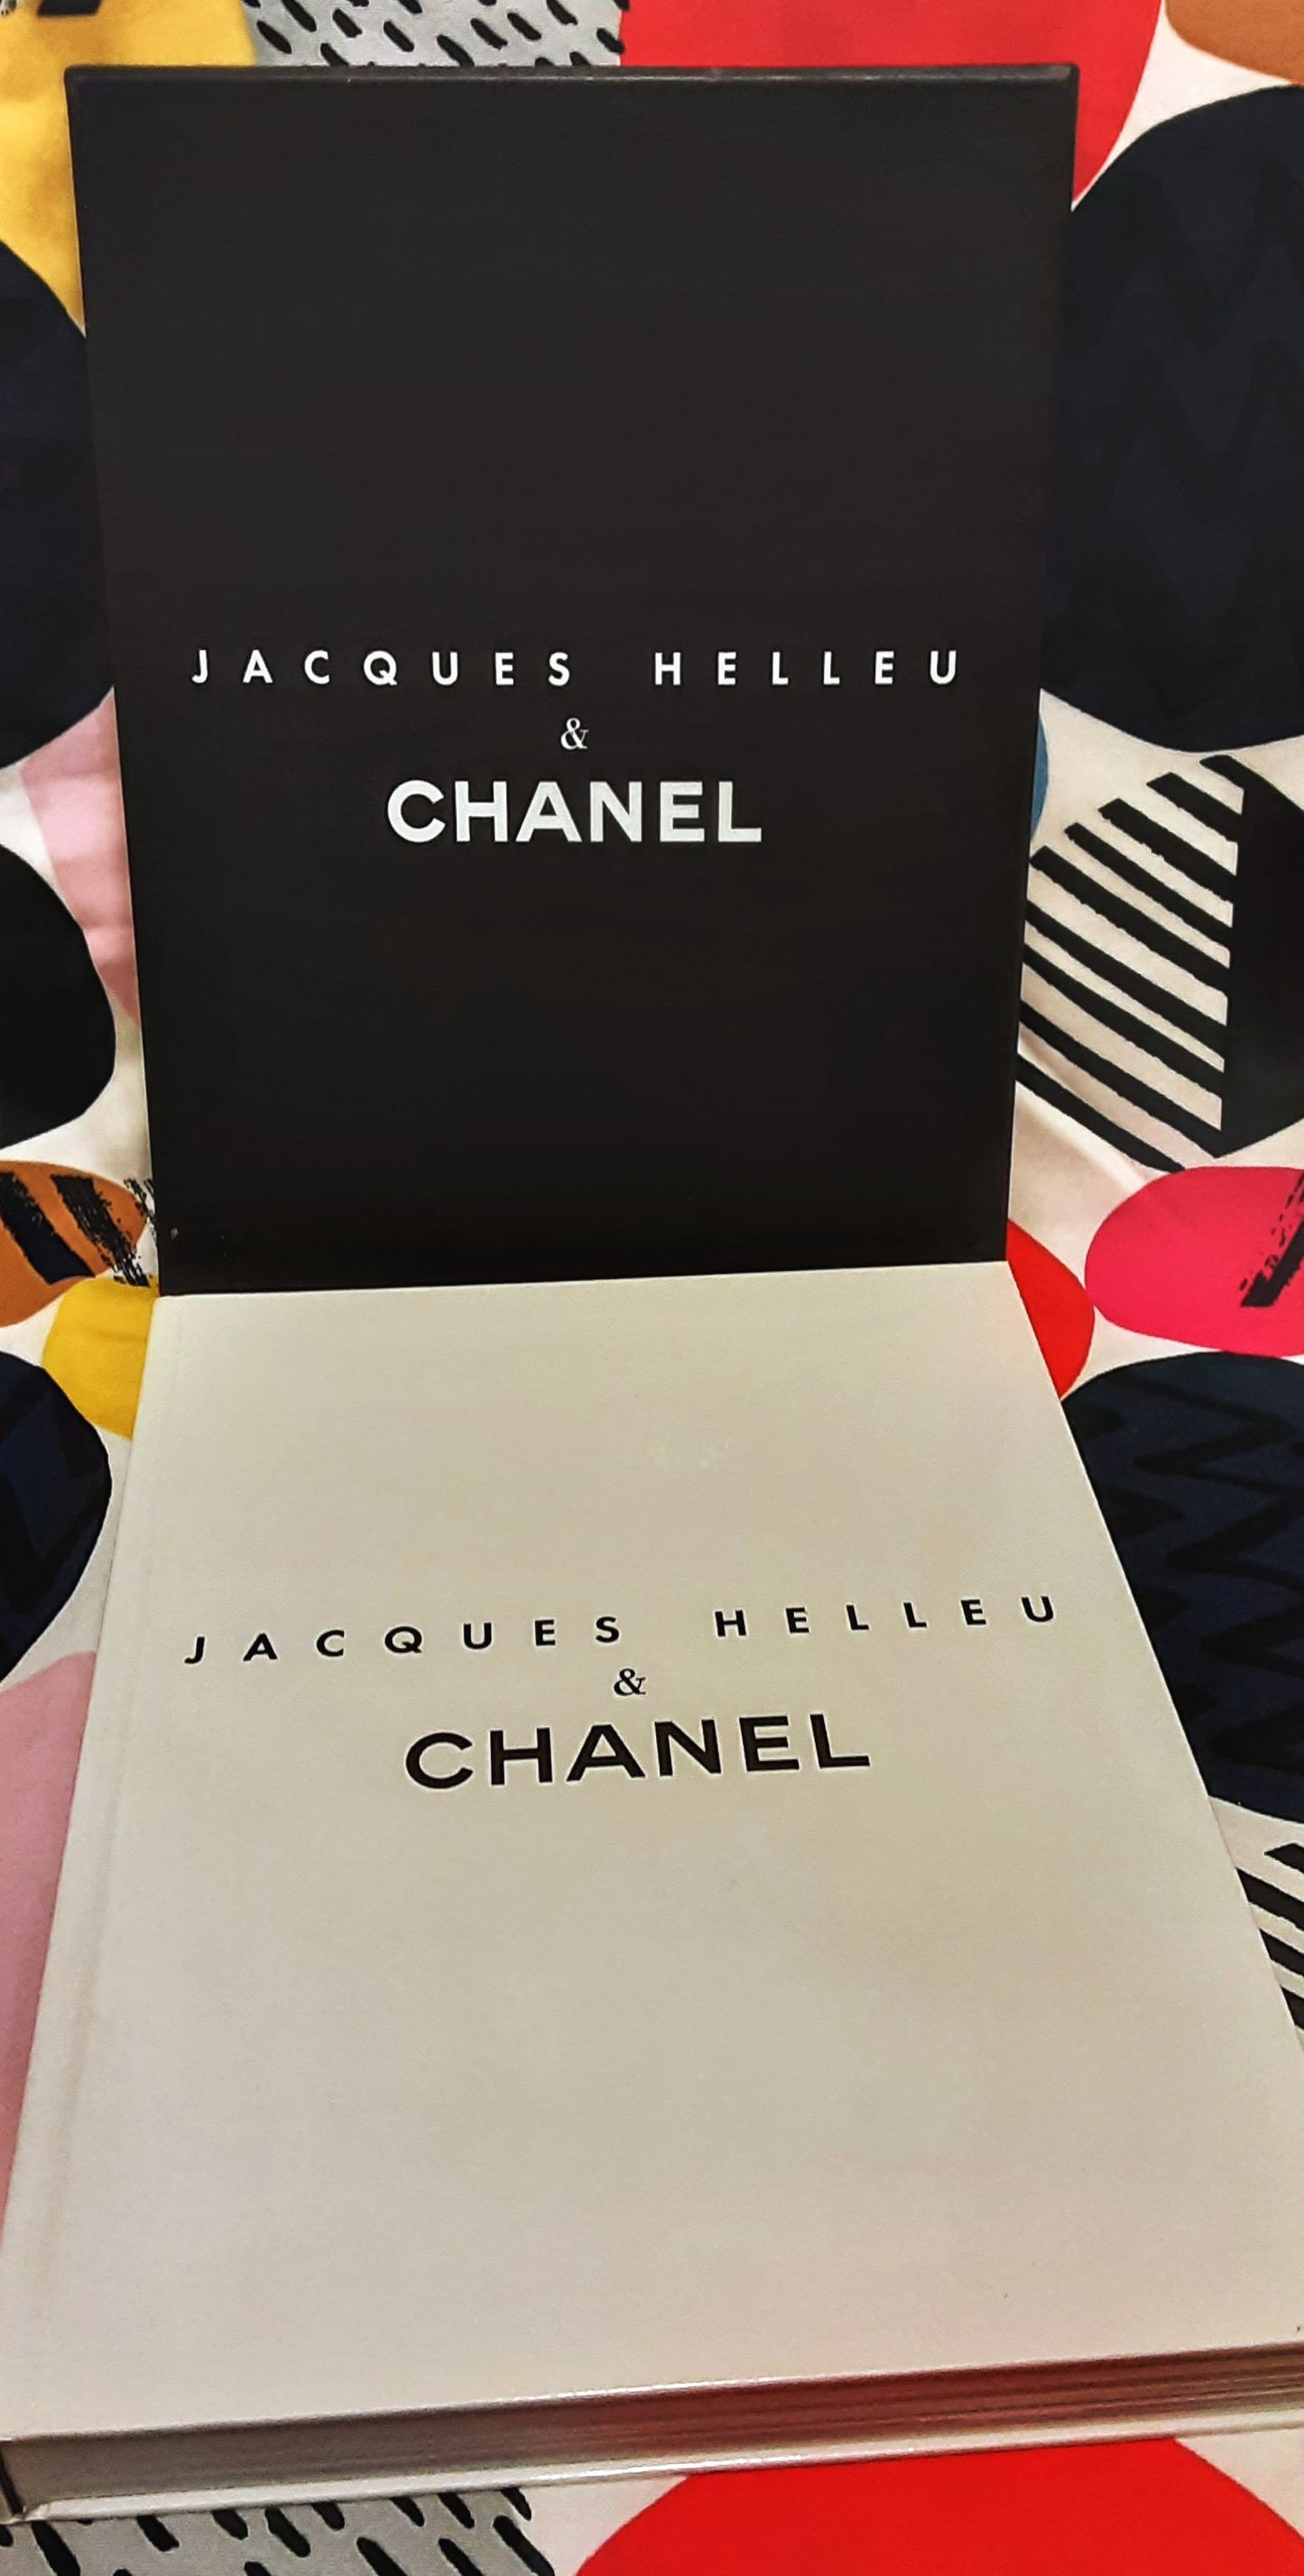 Jacques Helleu & Chanel, 2006